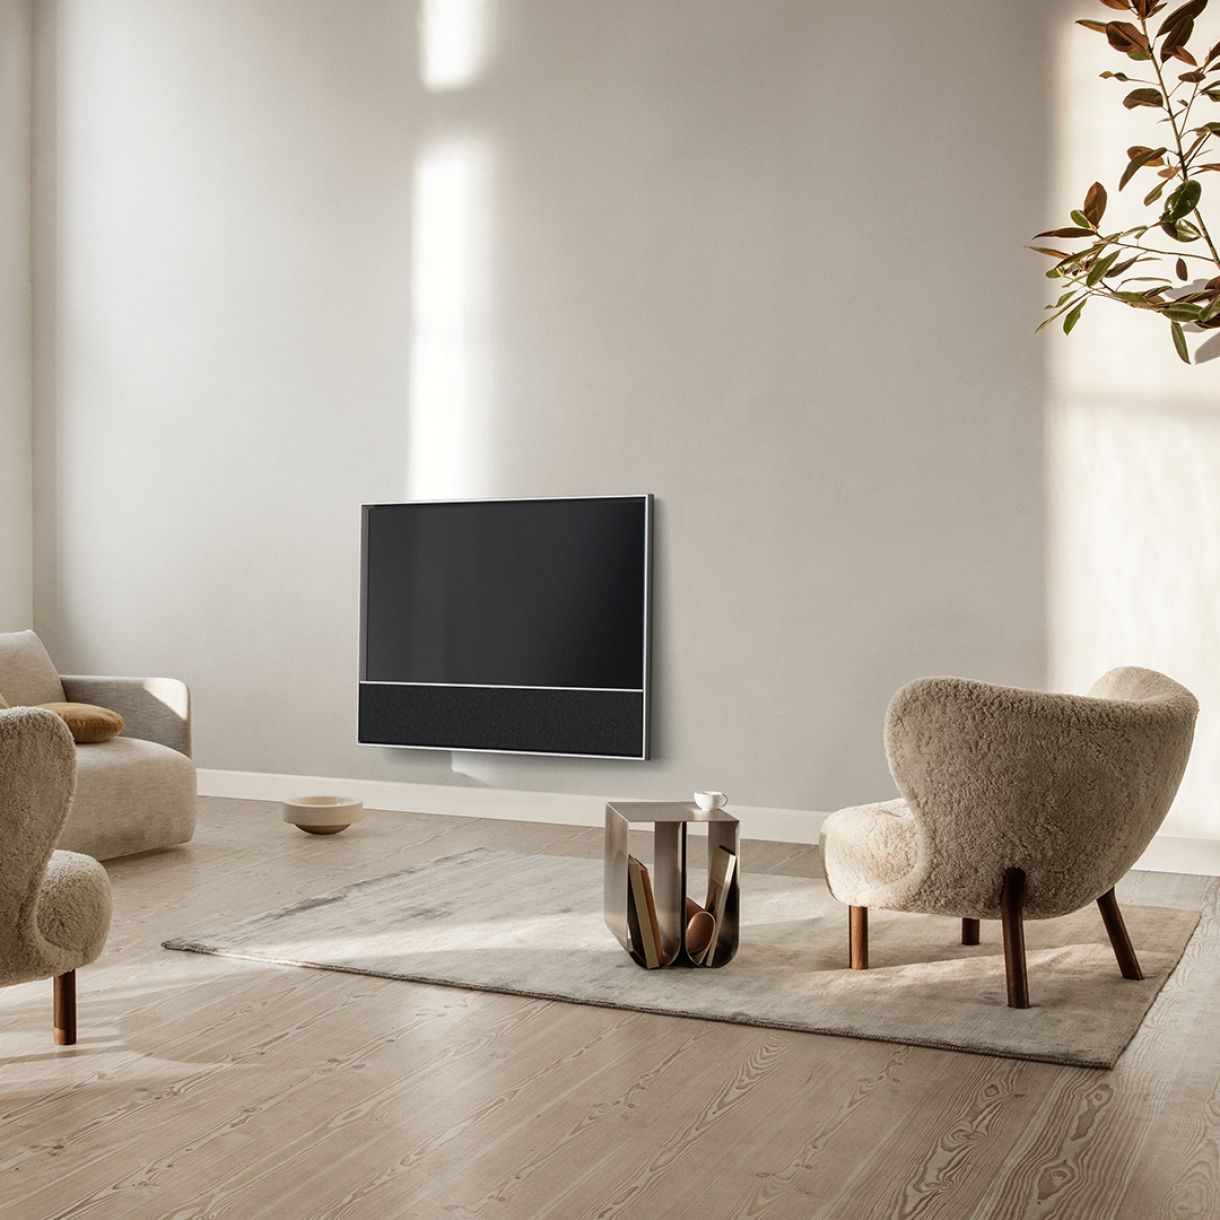 Das zeitlose Design des Bang & Olufsen Beovision Contour lässt den Fernseher in jeder Wohnung edel wirken. Durch seine elf eingebauten Lautsprechertreiber erleben sie ein verblüffendes Fernseheerlebnis.